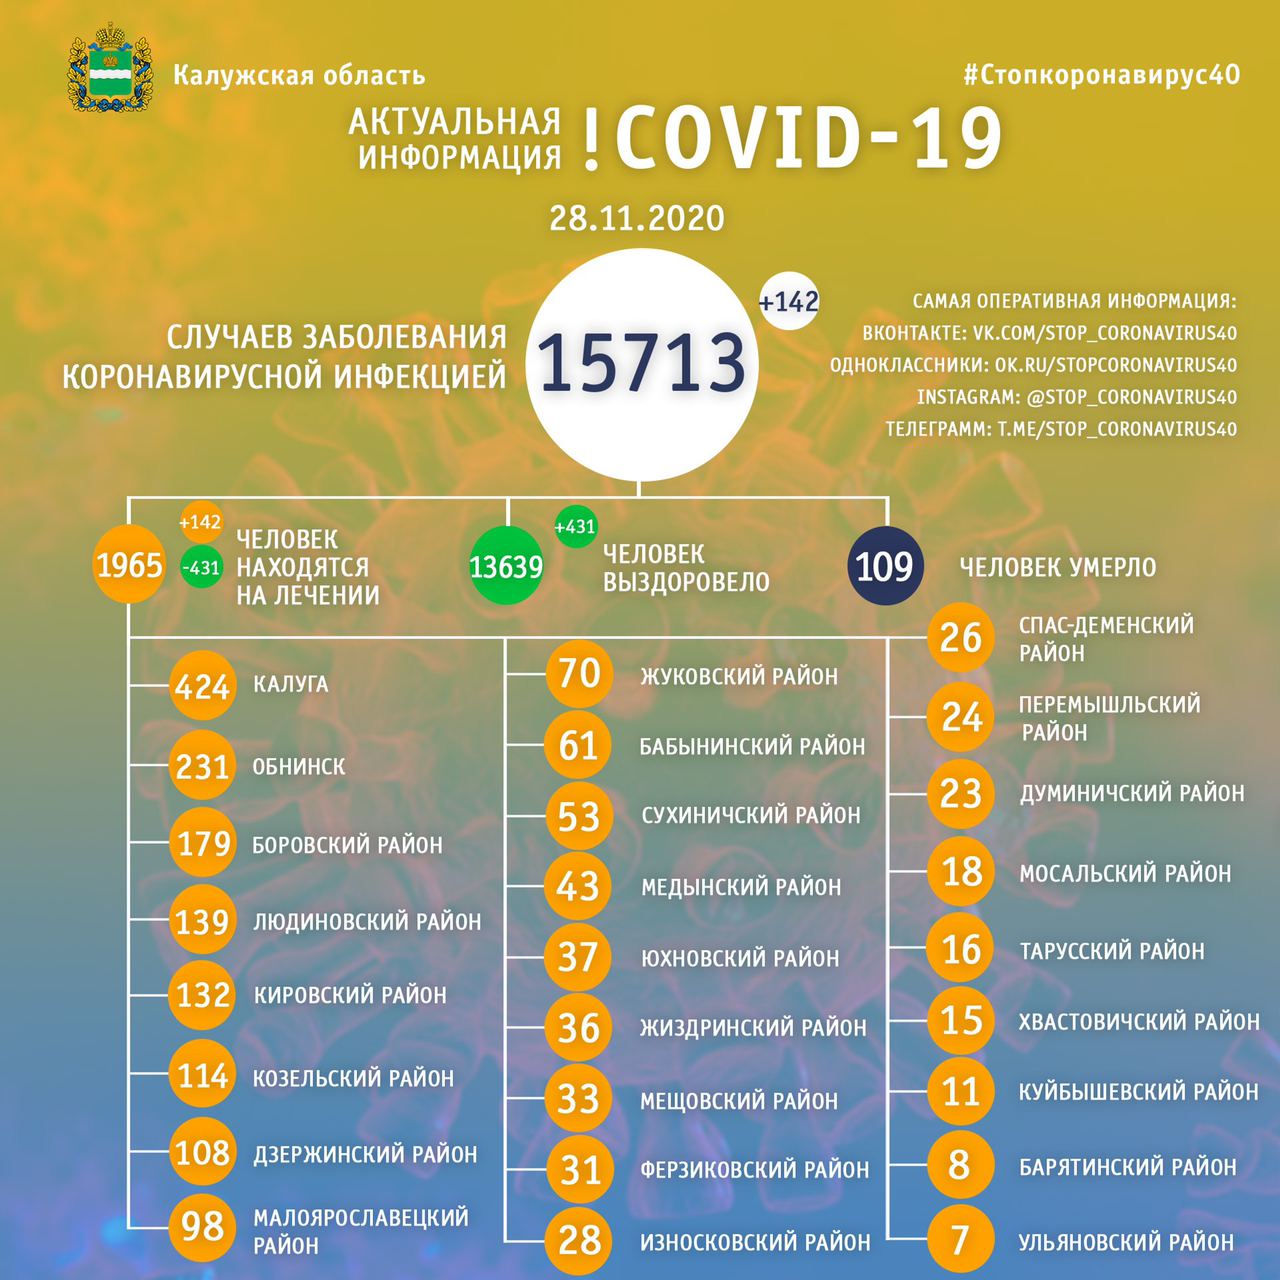 Официальная статистика по коронавирусу в Калужской области на 28 ноября 2020 года.